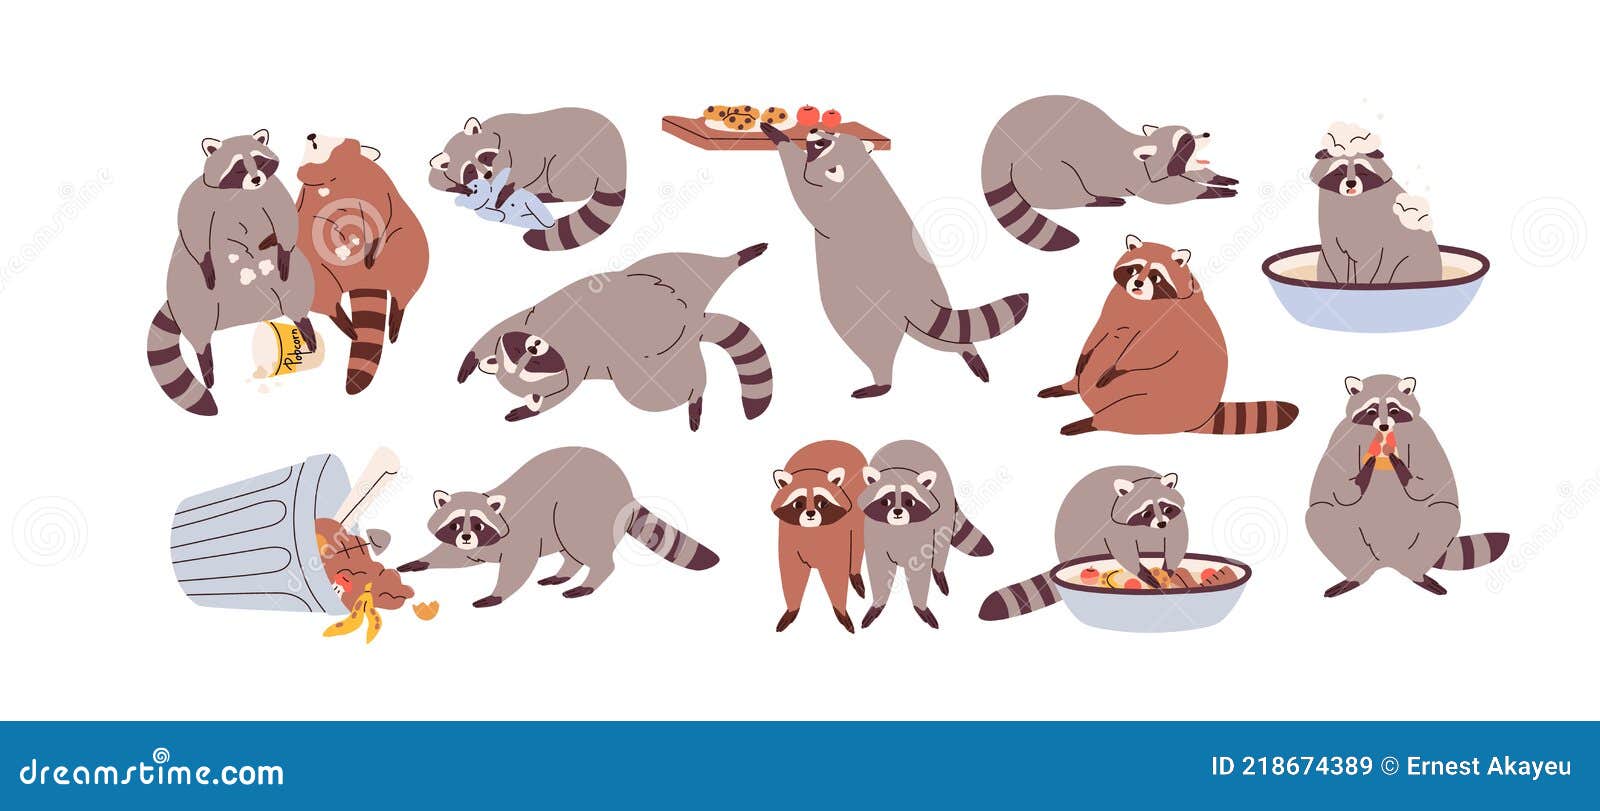 cute funny raccoons set. slow lazy racoon characters eating, overeating, sleeping and relaxing. sluggish sleepy animal